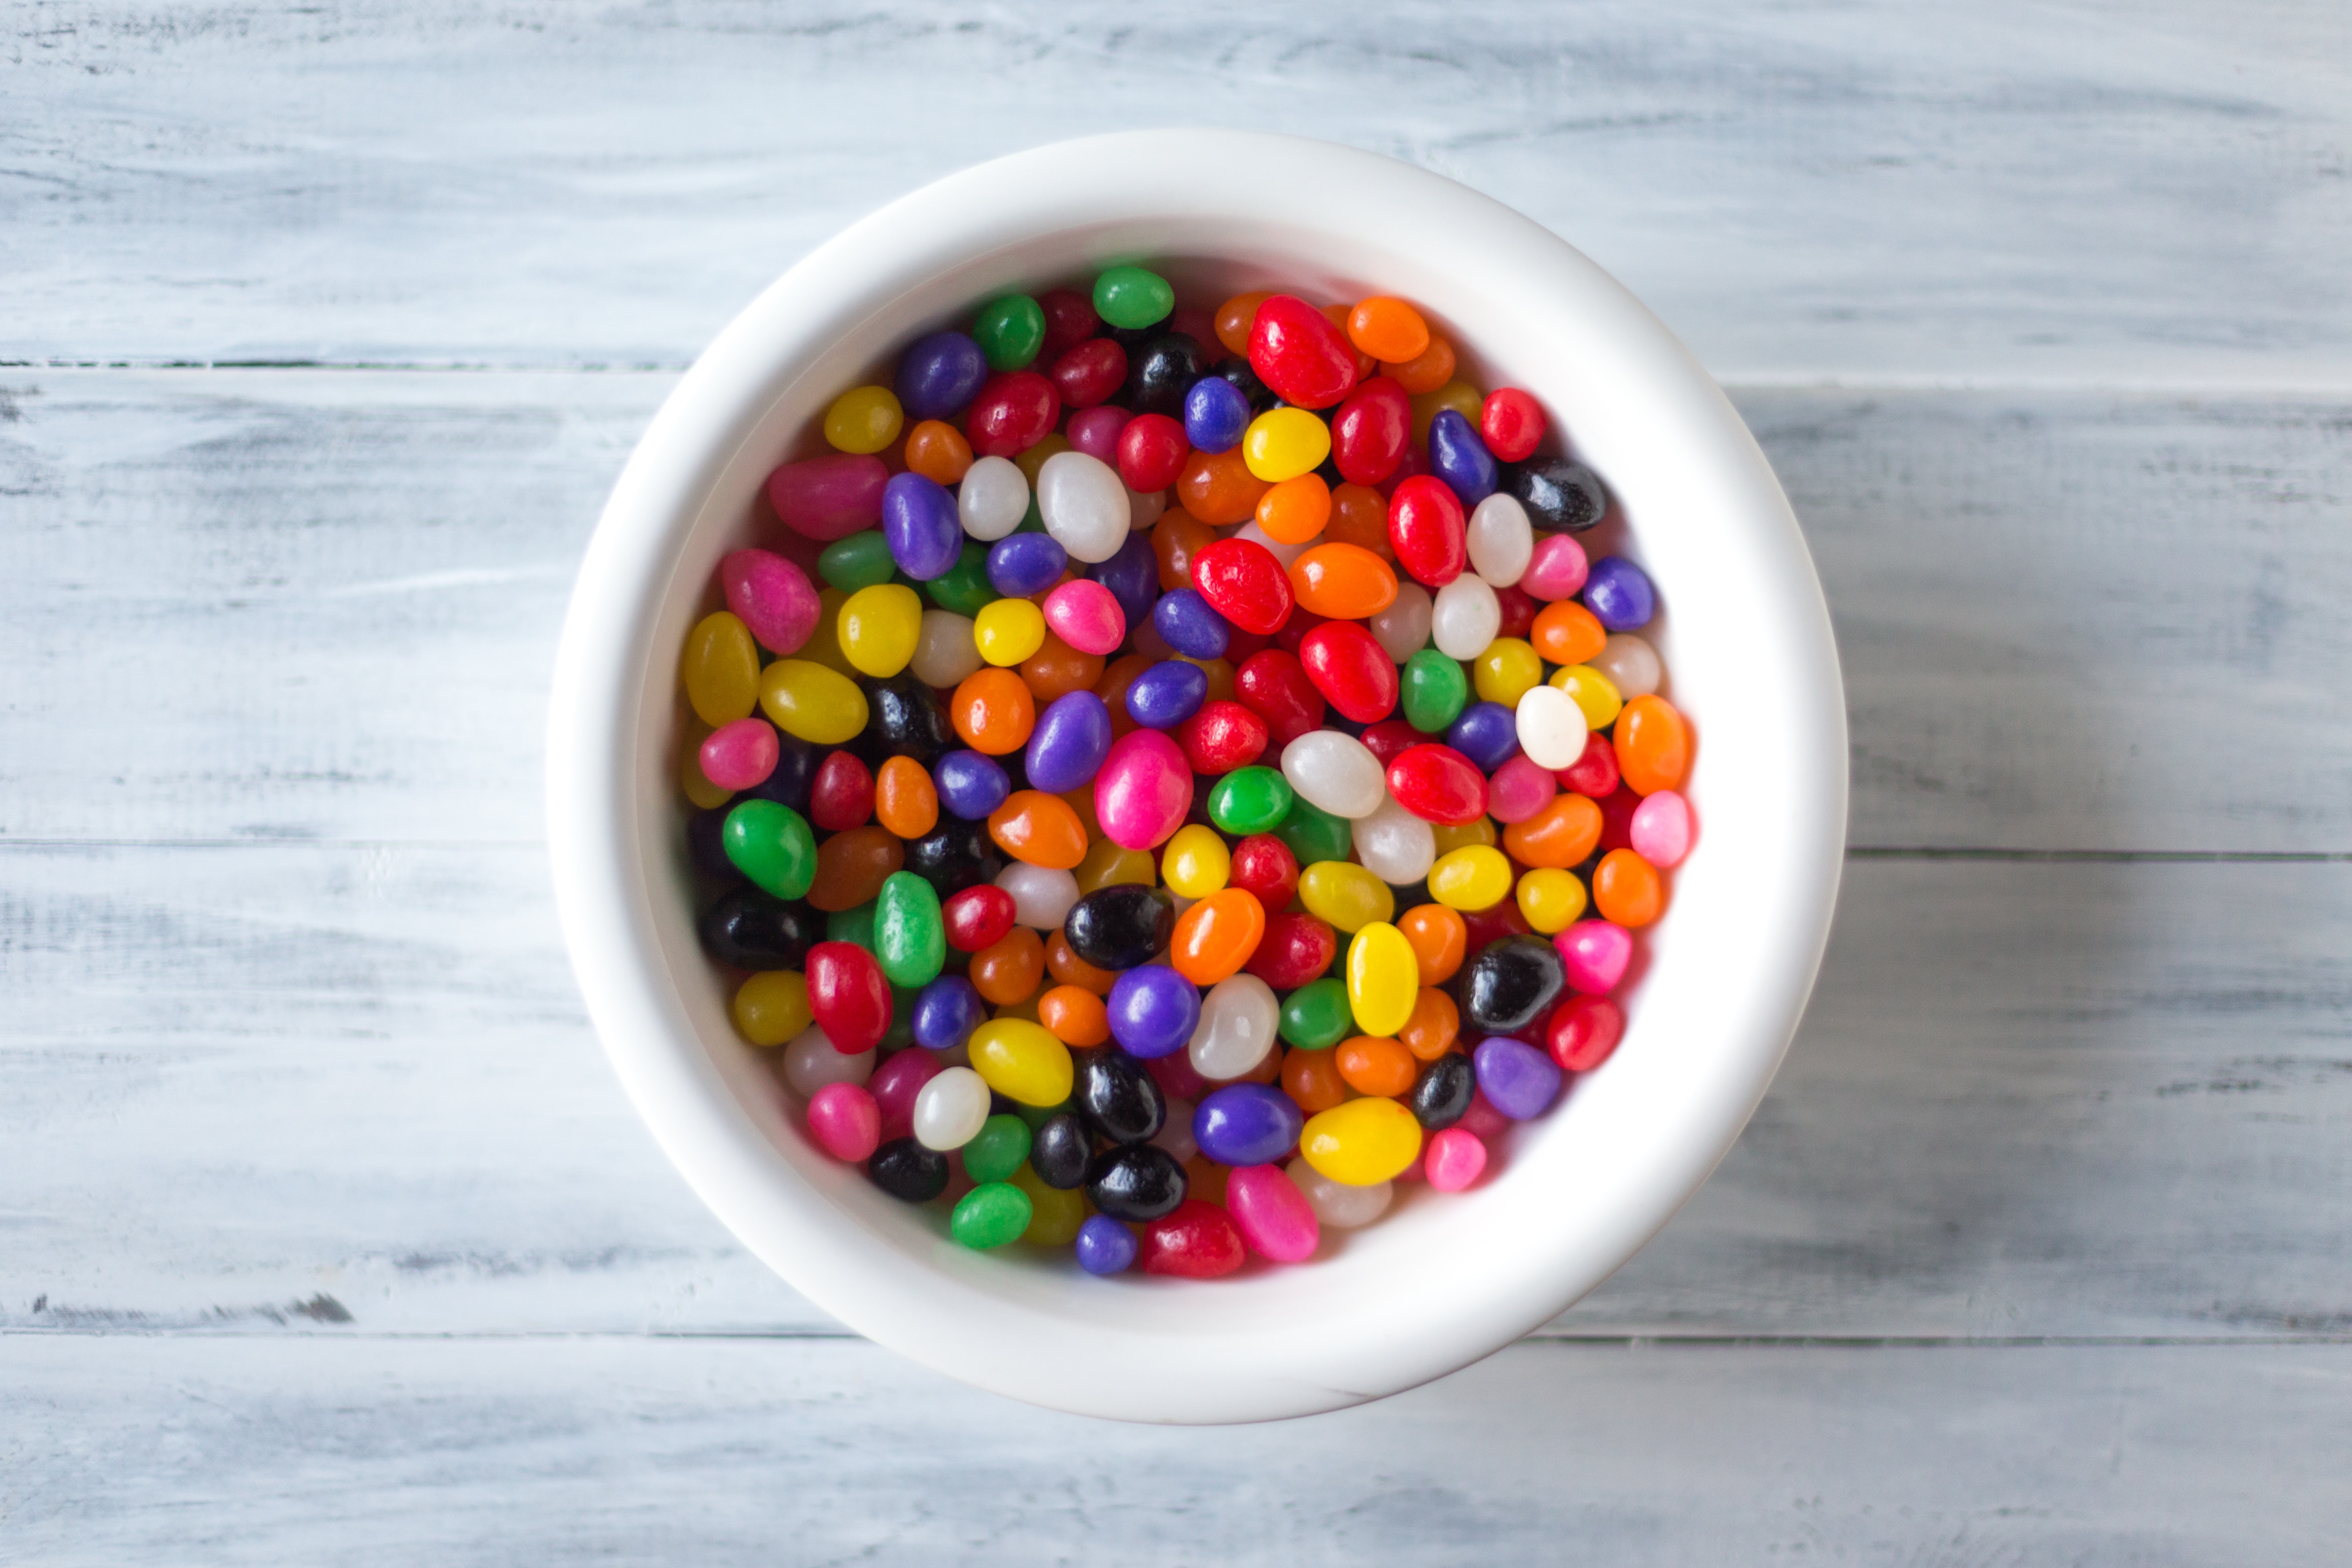 Alimentação infantil: por que não oferecer açúcar para crianças menores de 2 anos? - por: Dra. Carolina Assumpção - Endocrinologia Pediátrica